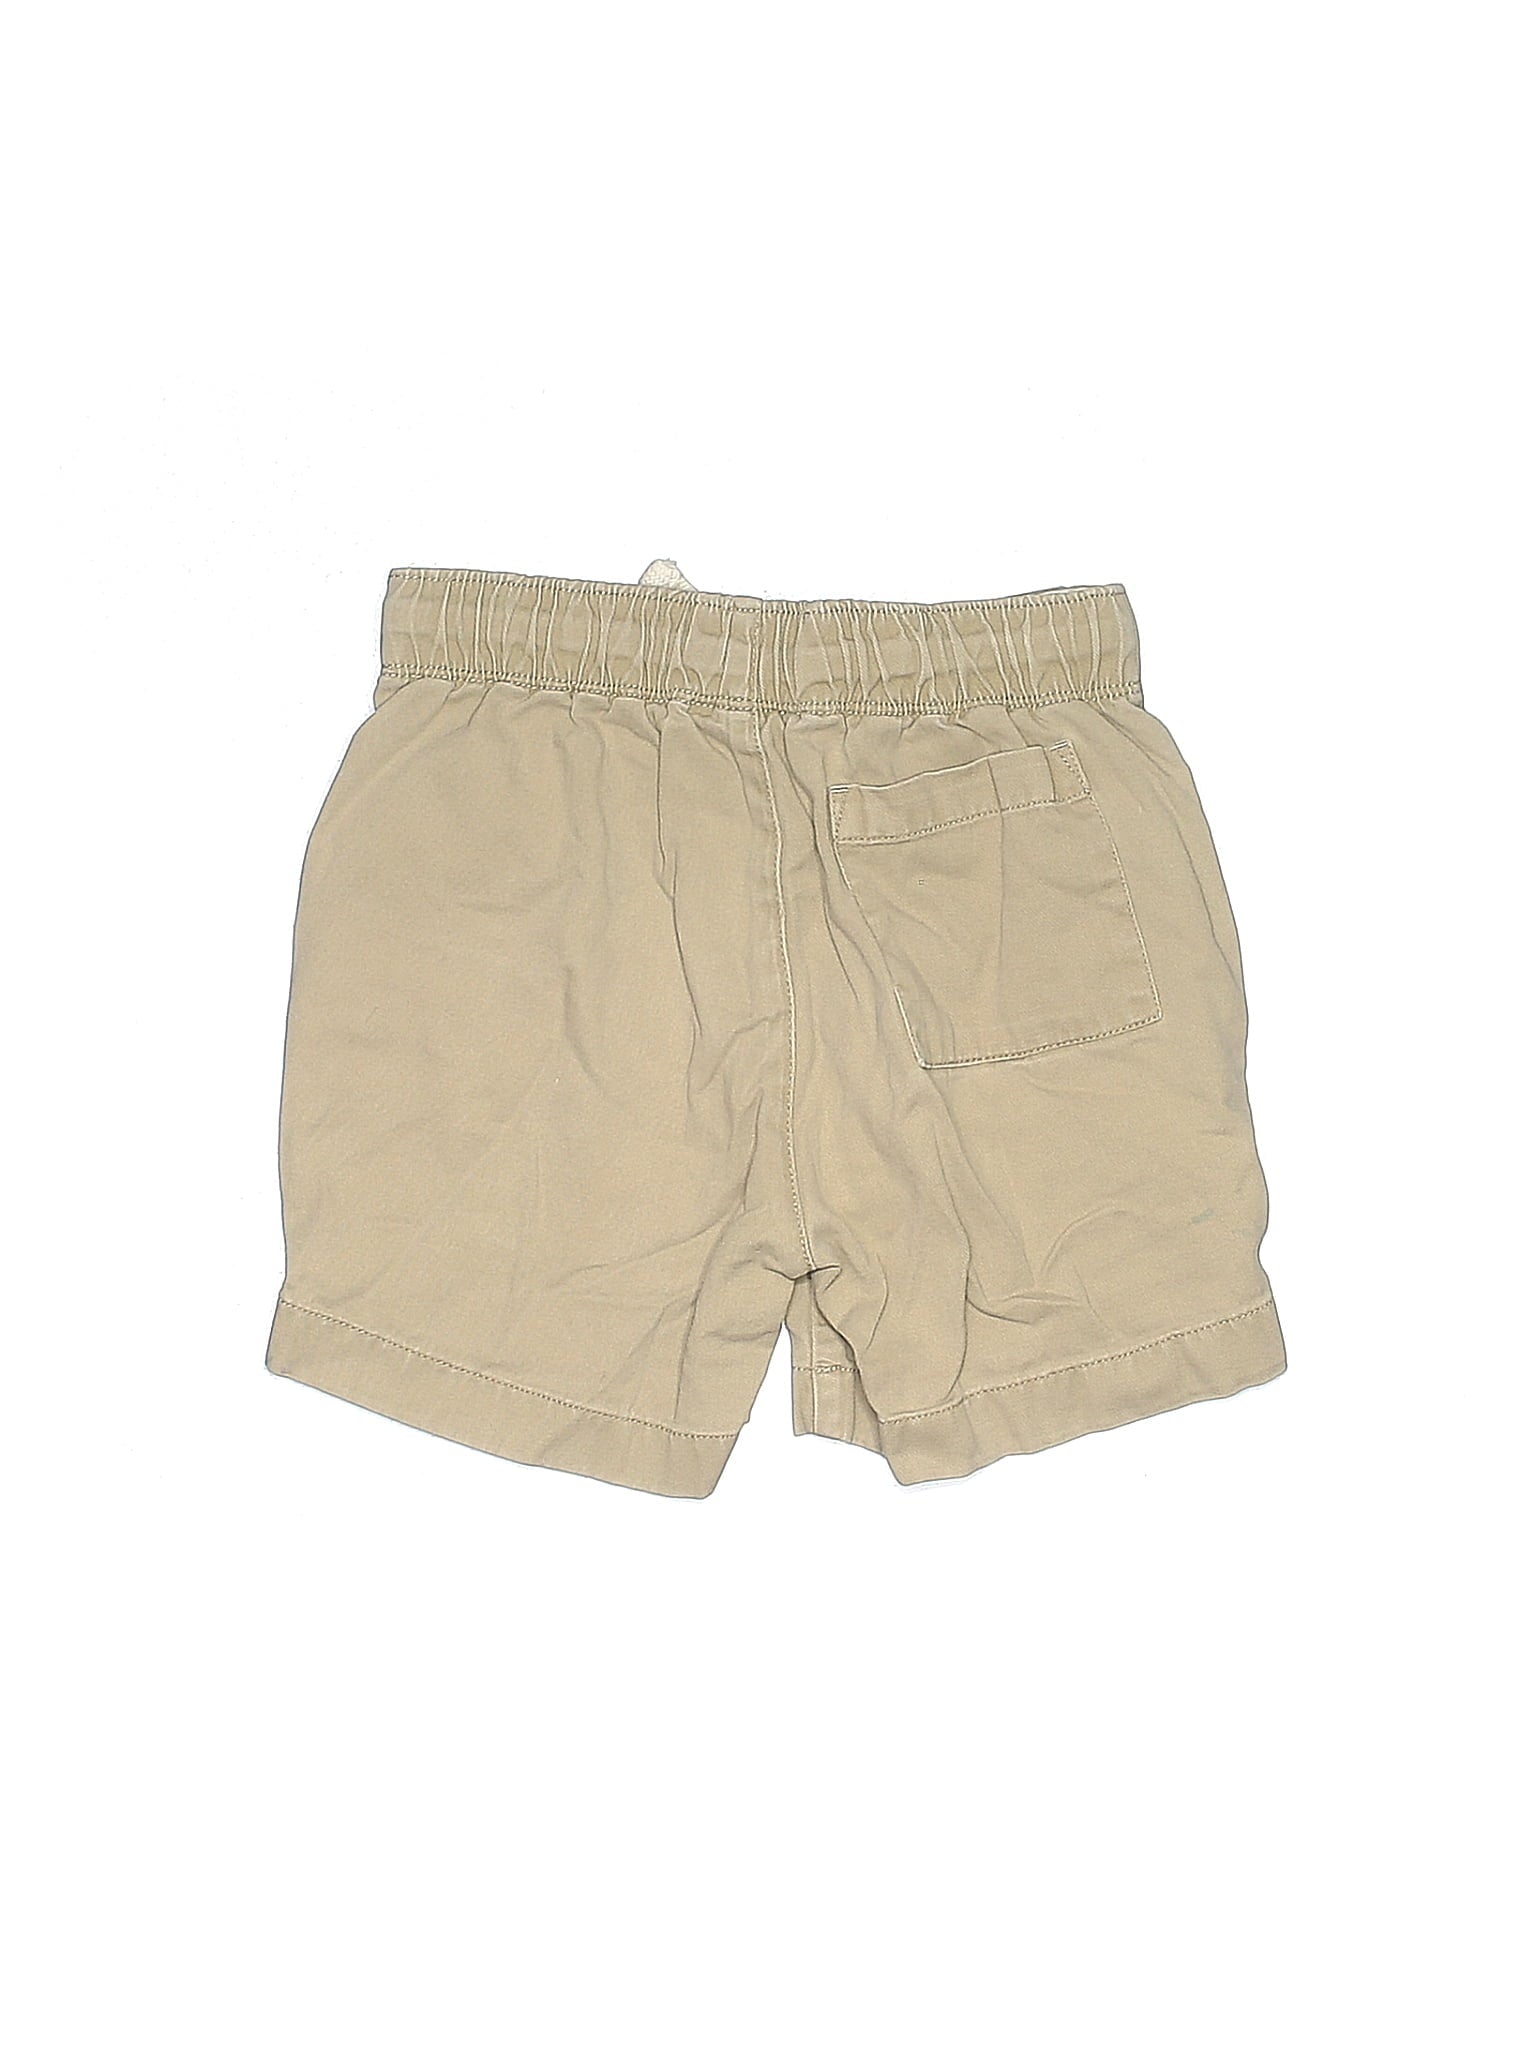 Khaki Shorts size - 4 - 5